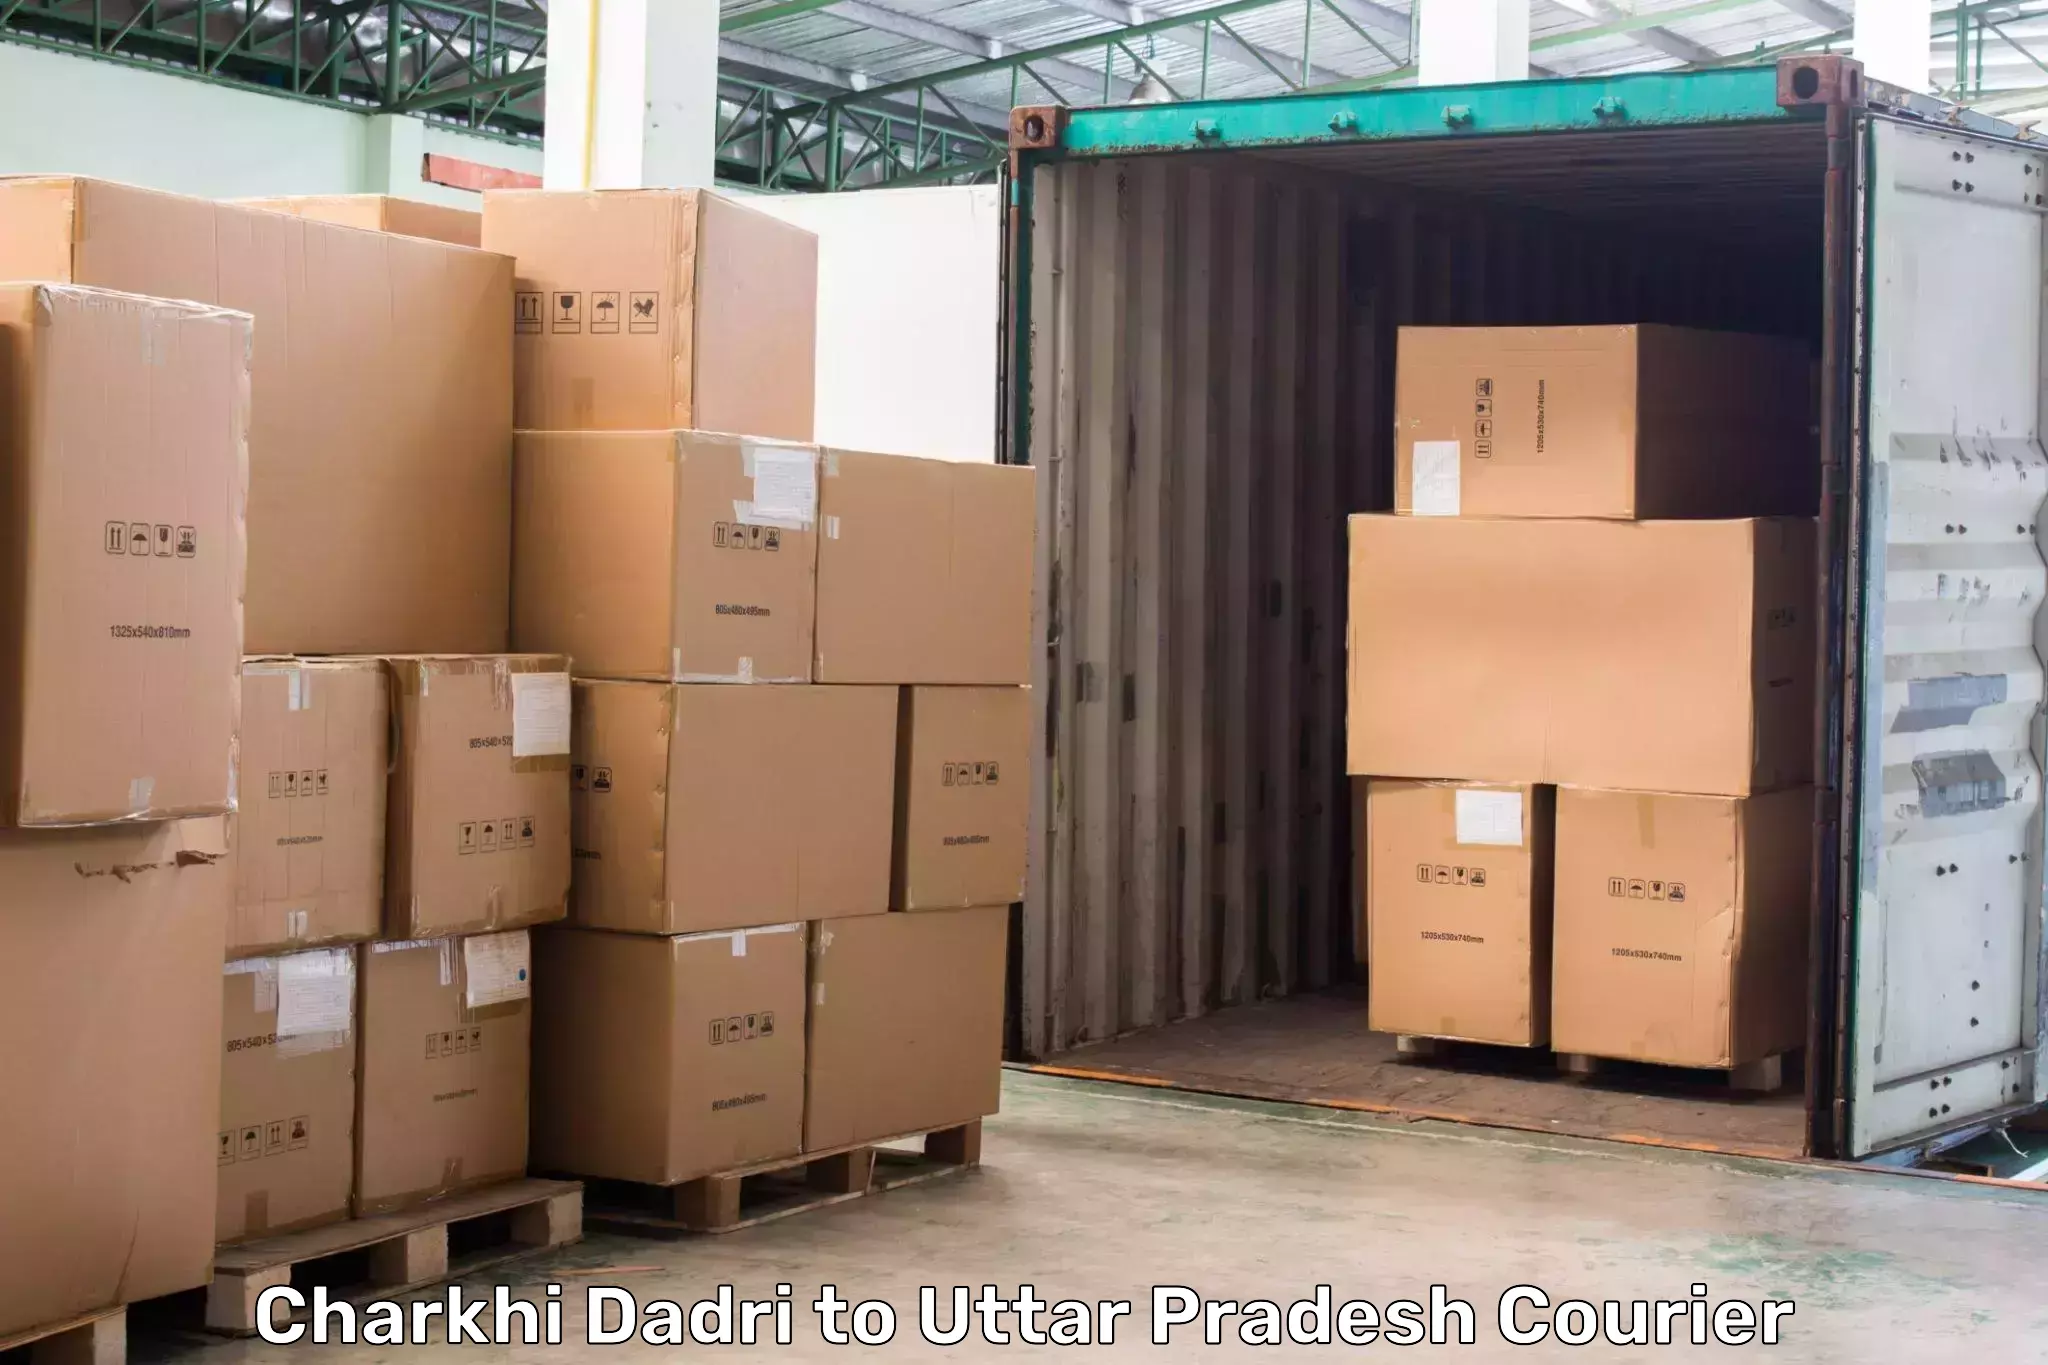 Urgent courier needs Charkhi Dadri to Khalilabad